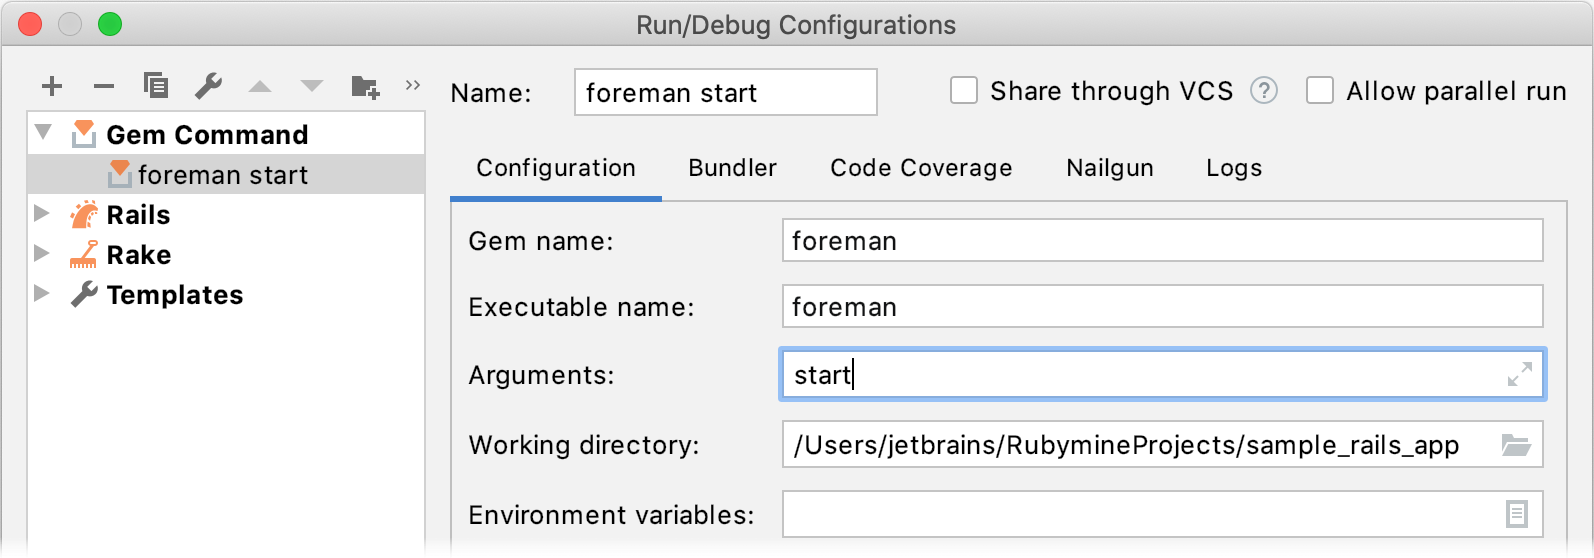 Foreman run/debug configuration